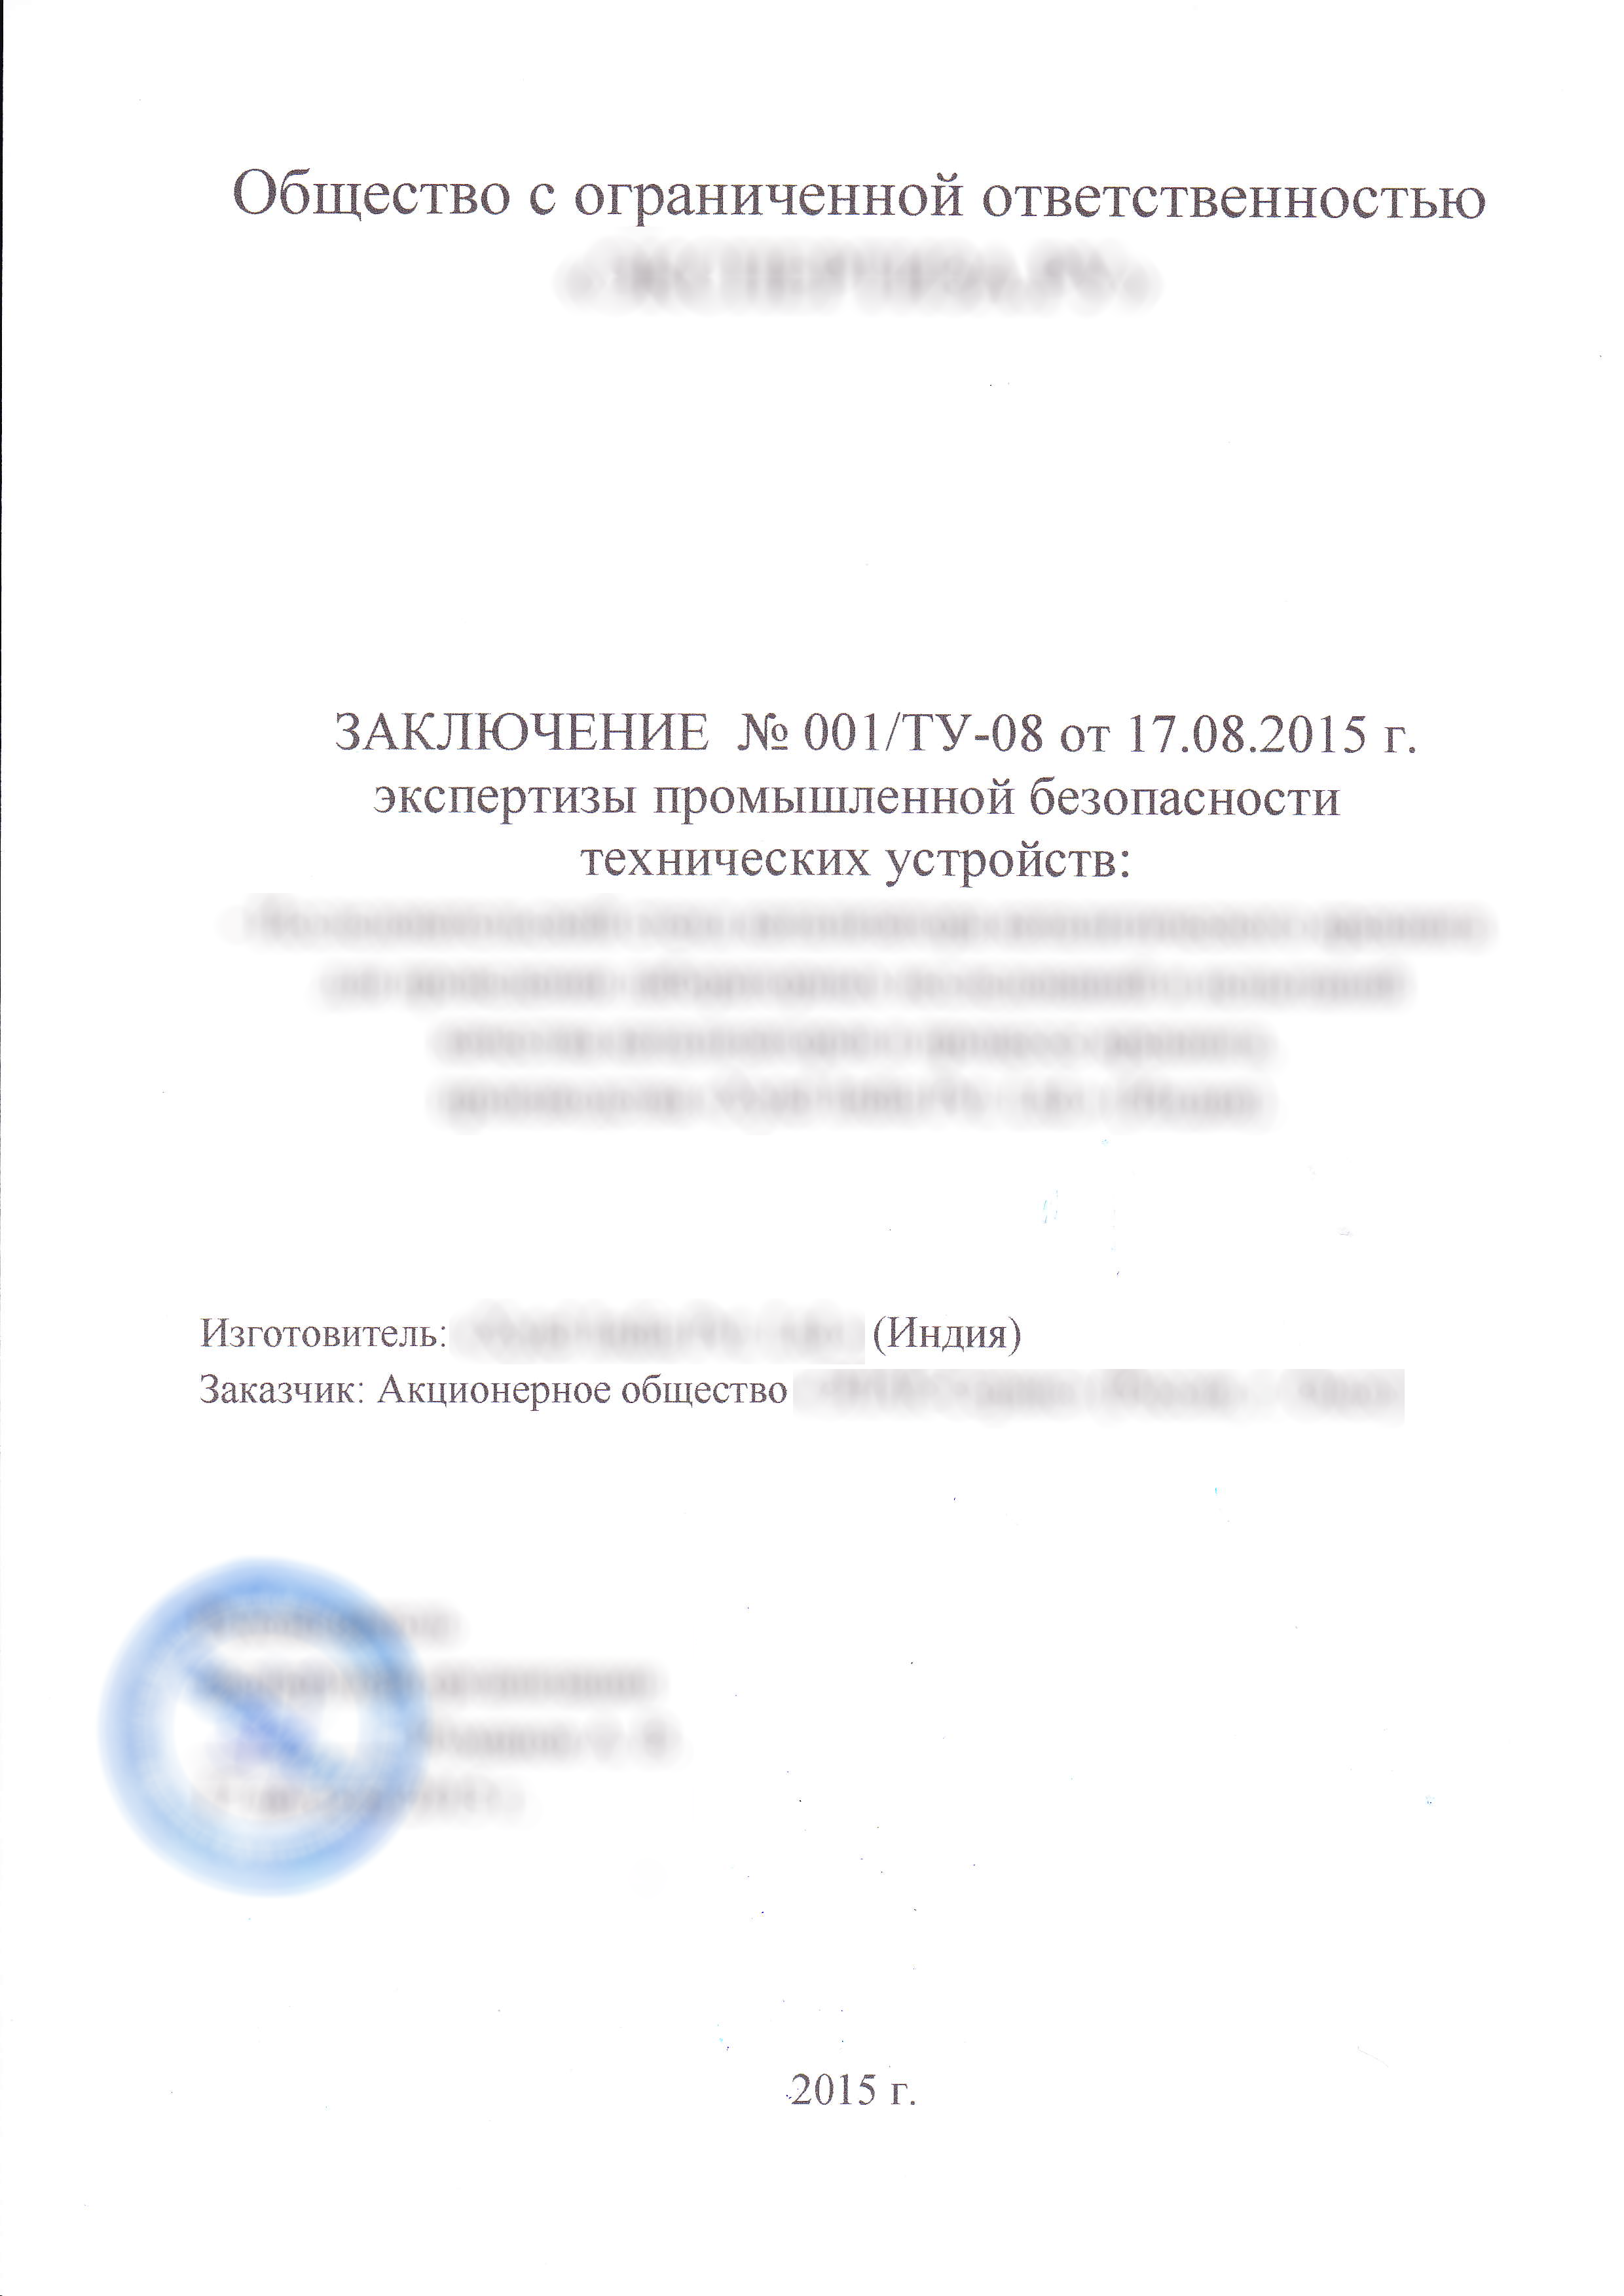 Экспертиза промышленной безопасности технических устройств в Казани